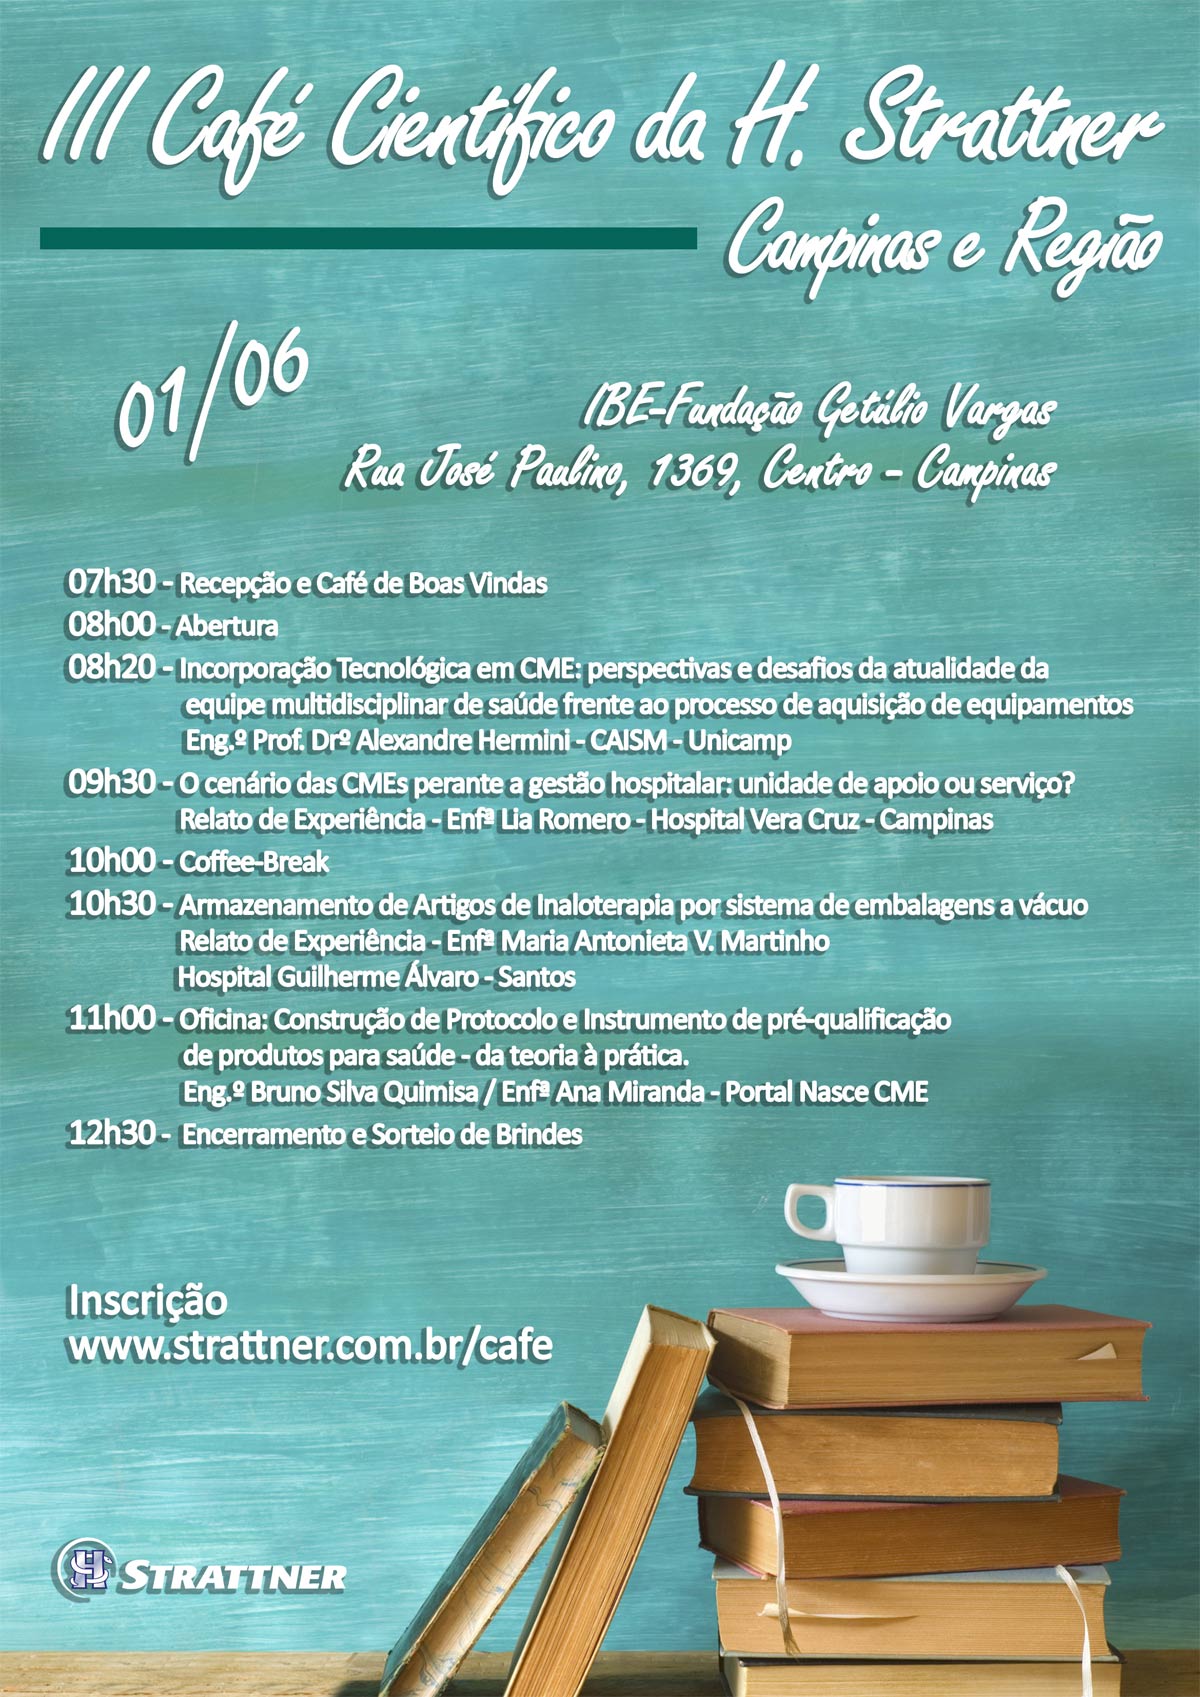 Café-Científico-H.-Strattner---Convite-5